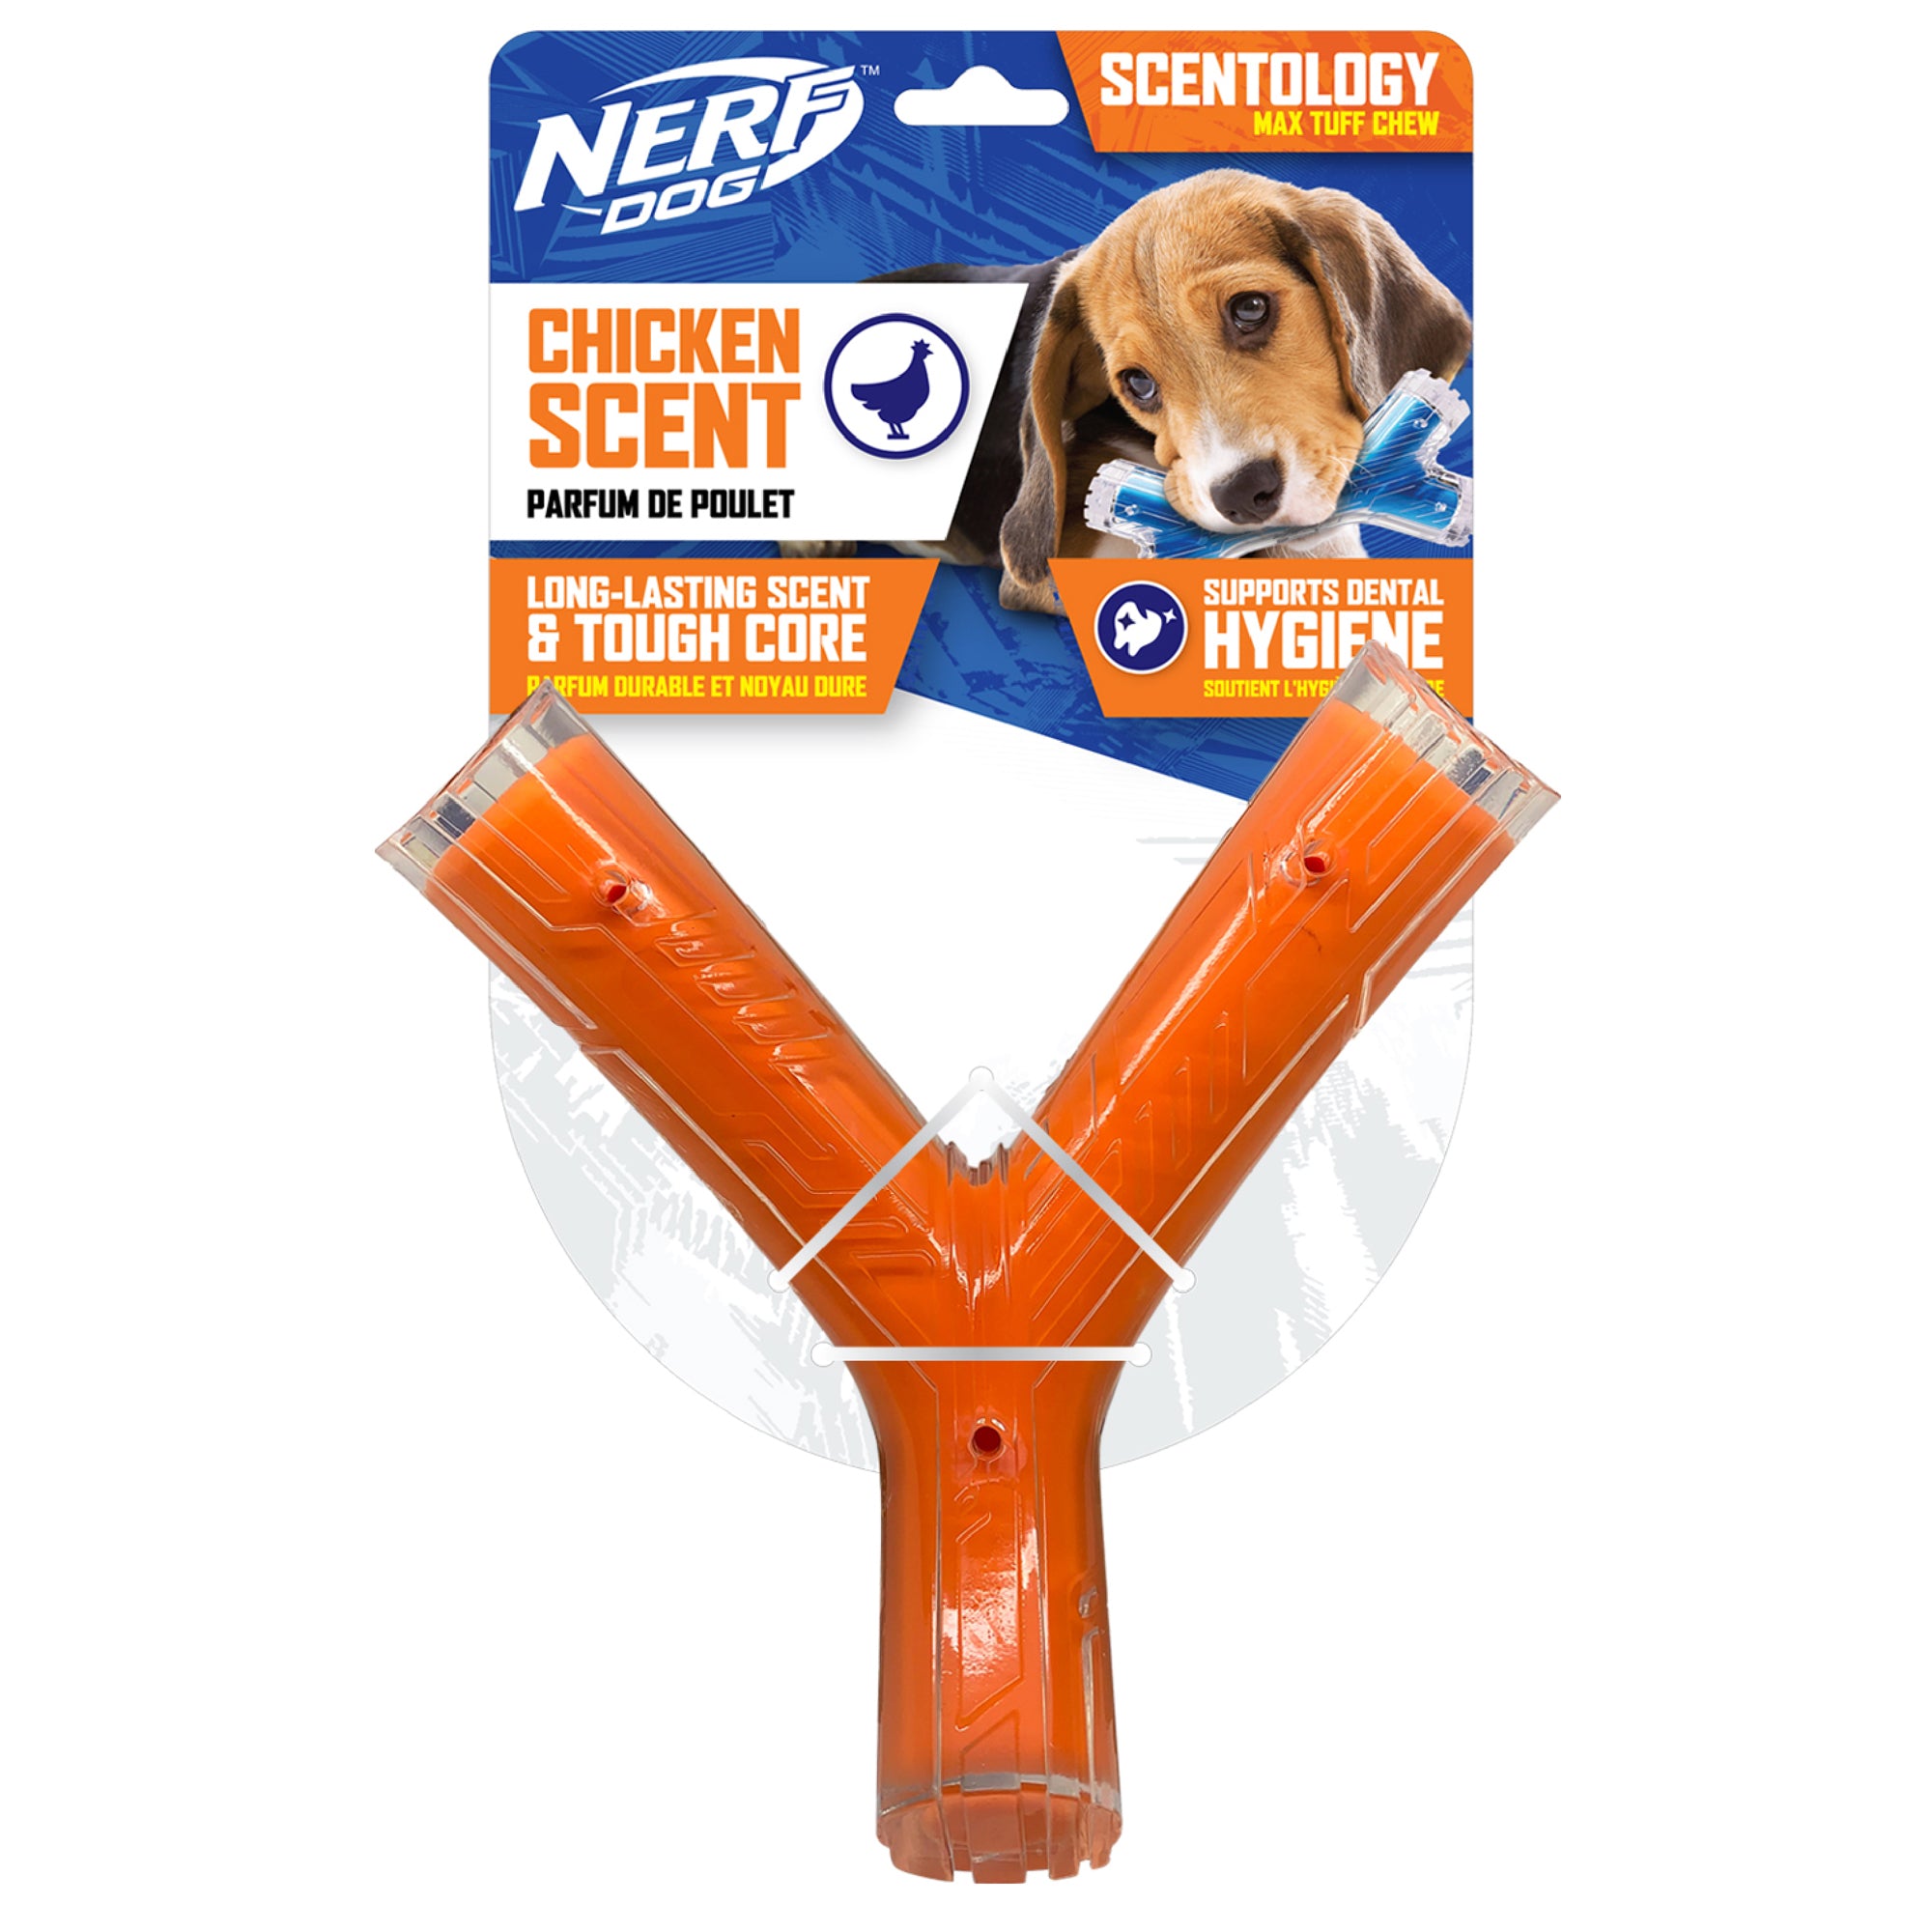 Os du bonheur Scentology Nerf Dog, parfum de poulet, orange, 21 cm (8,3 po)